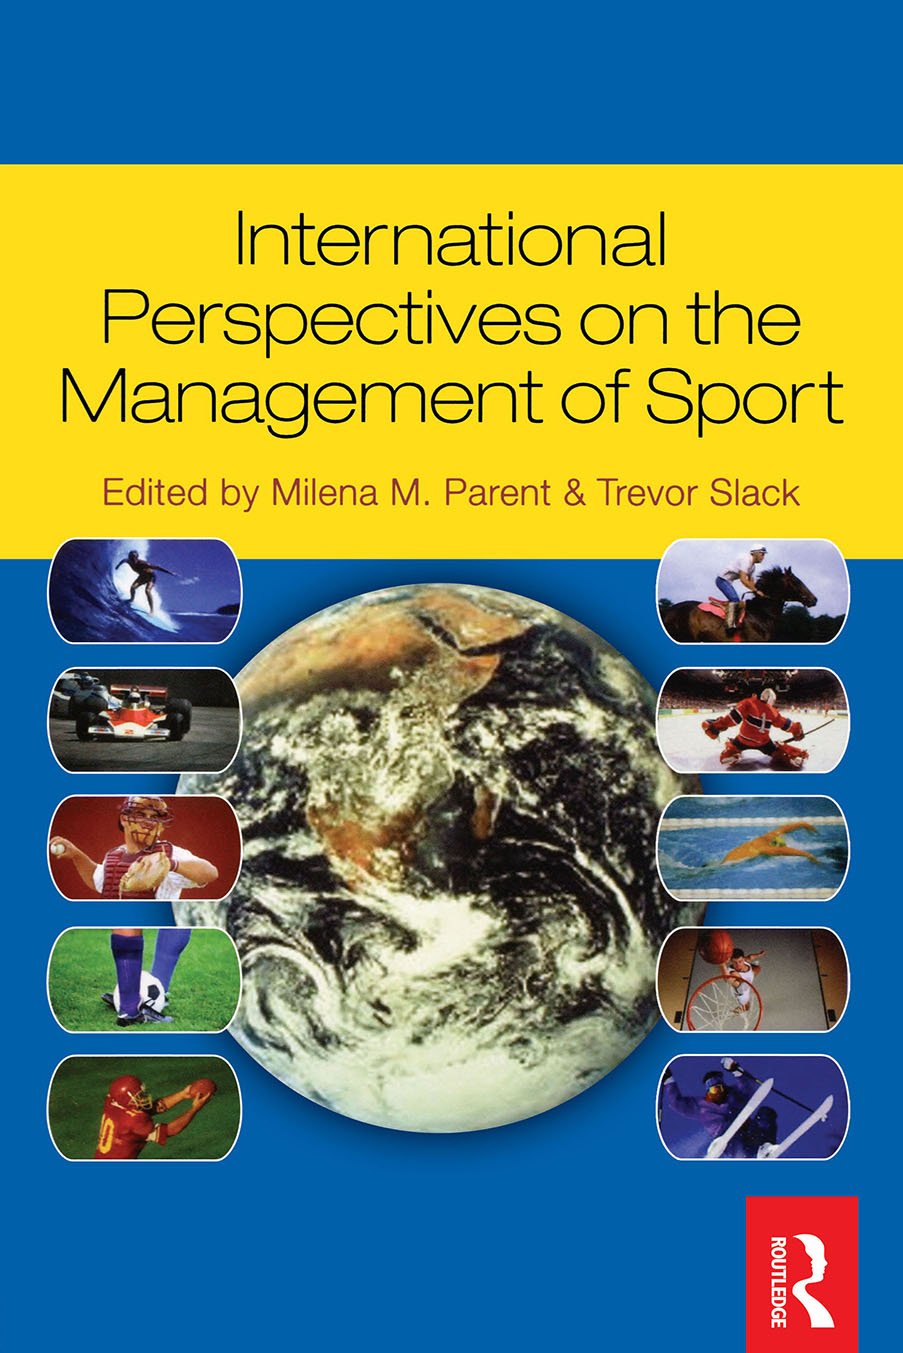 International Perspectives on the Management of Sport - Trevor Slack, Milena M. Parent